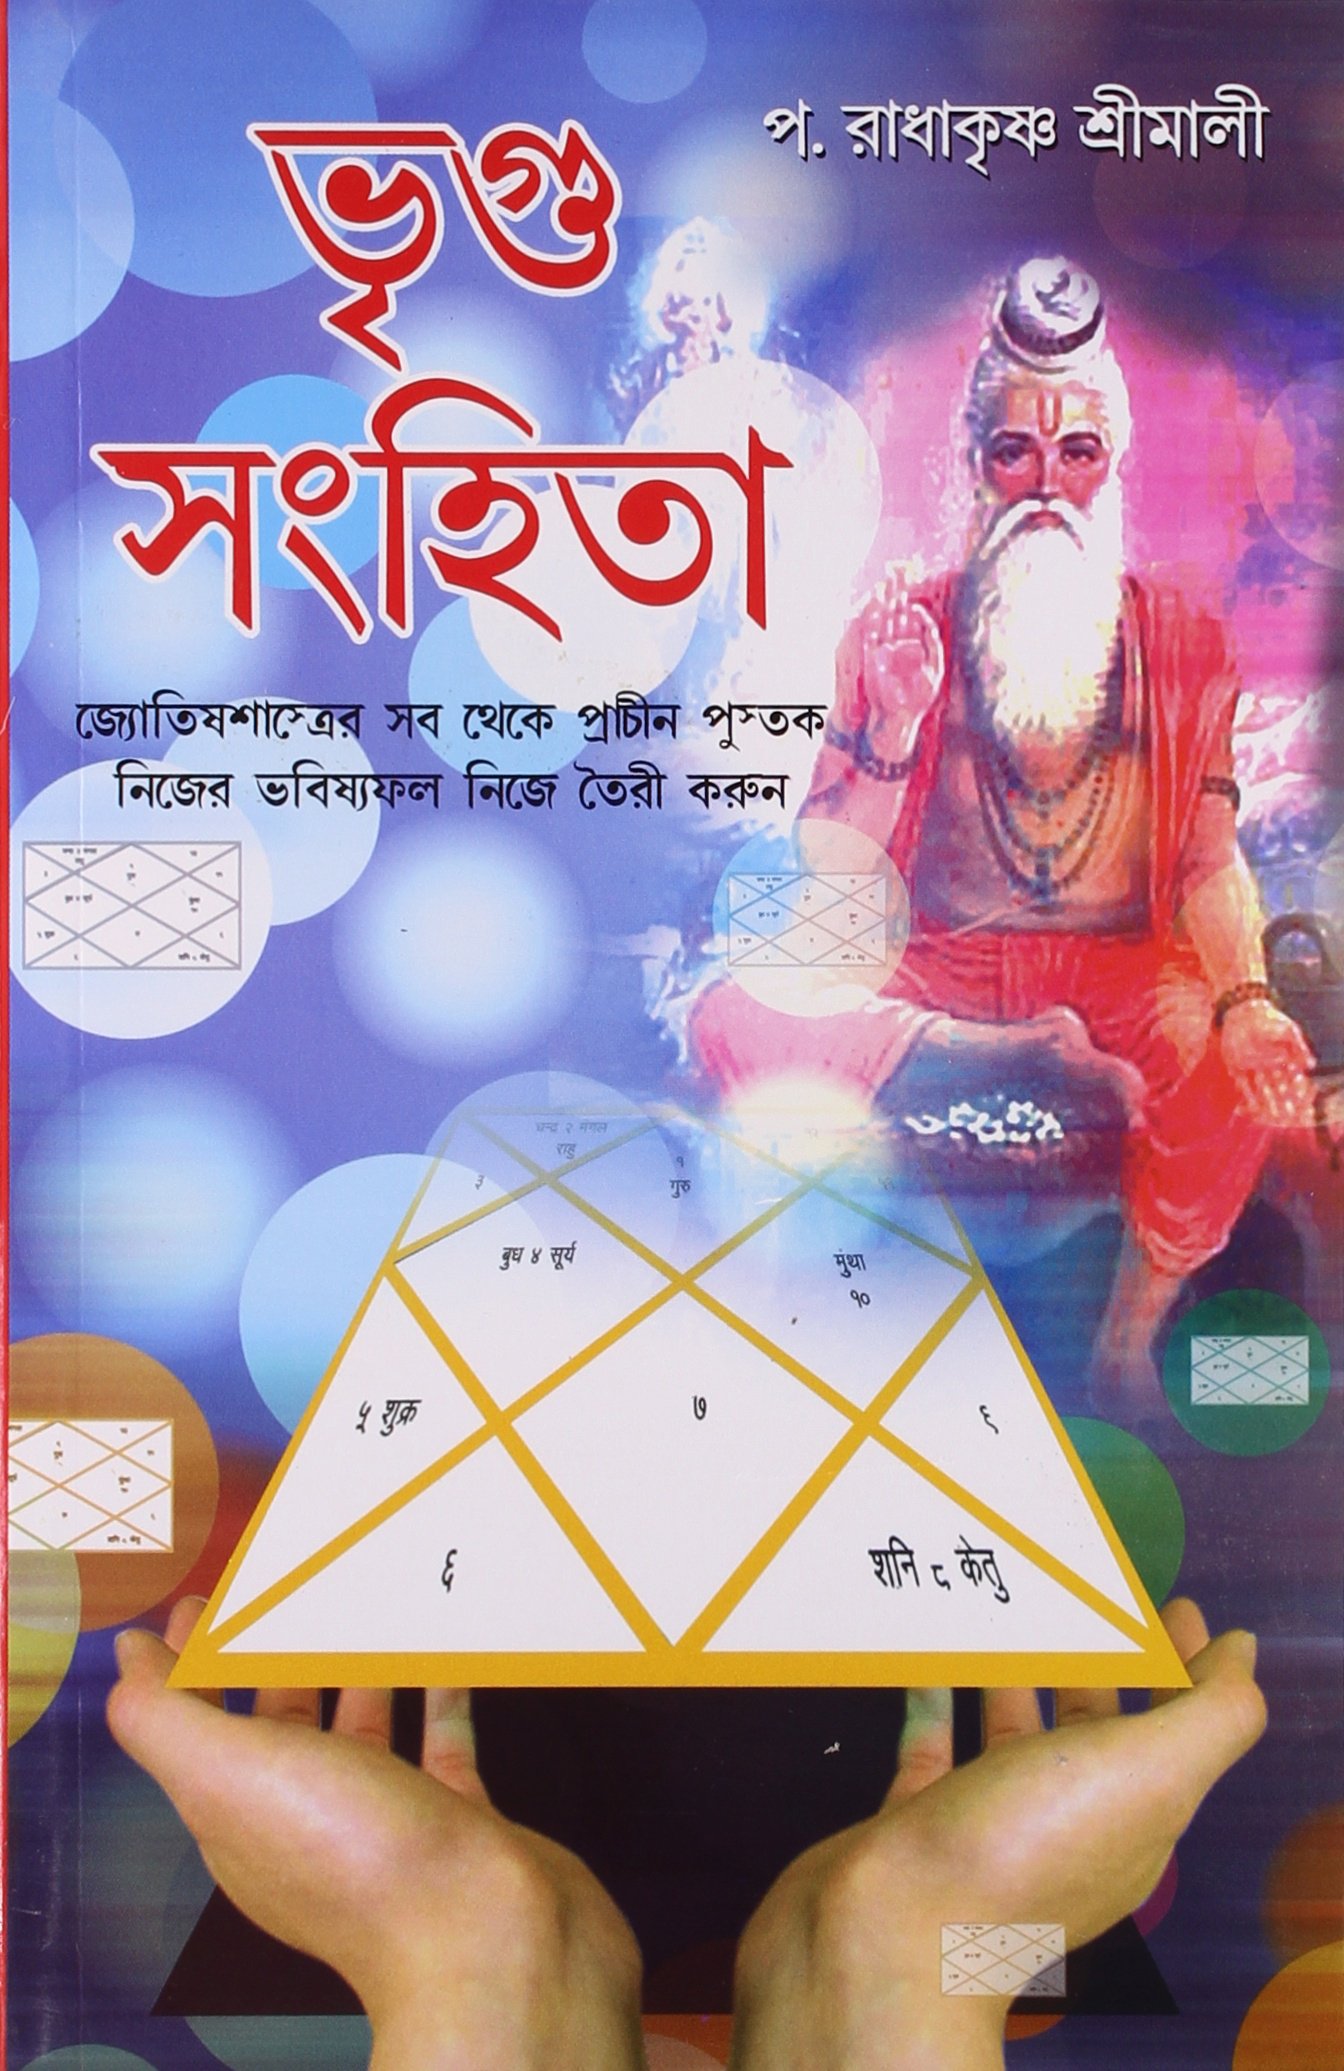 kiro astrology book in bengali pdf